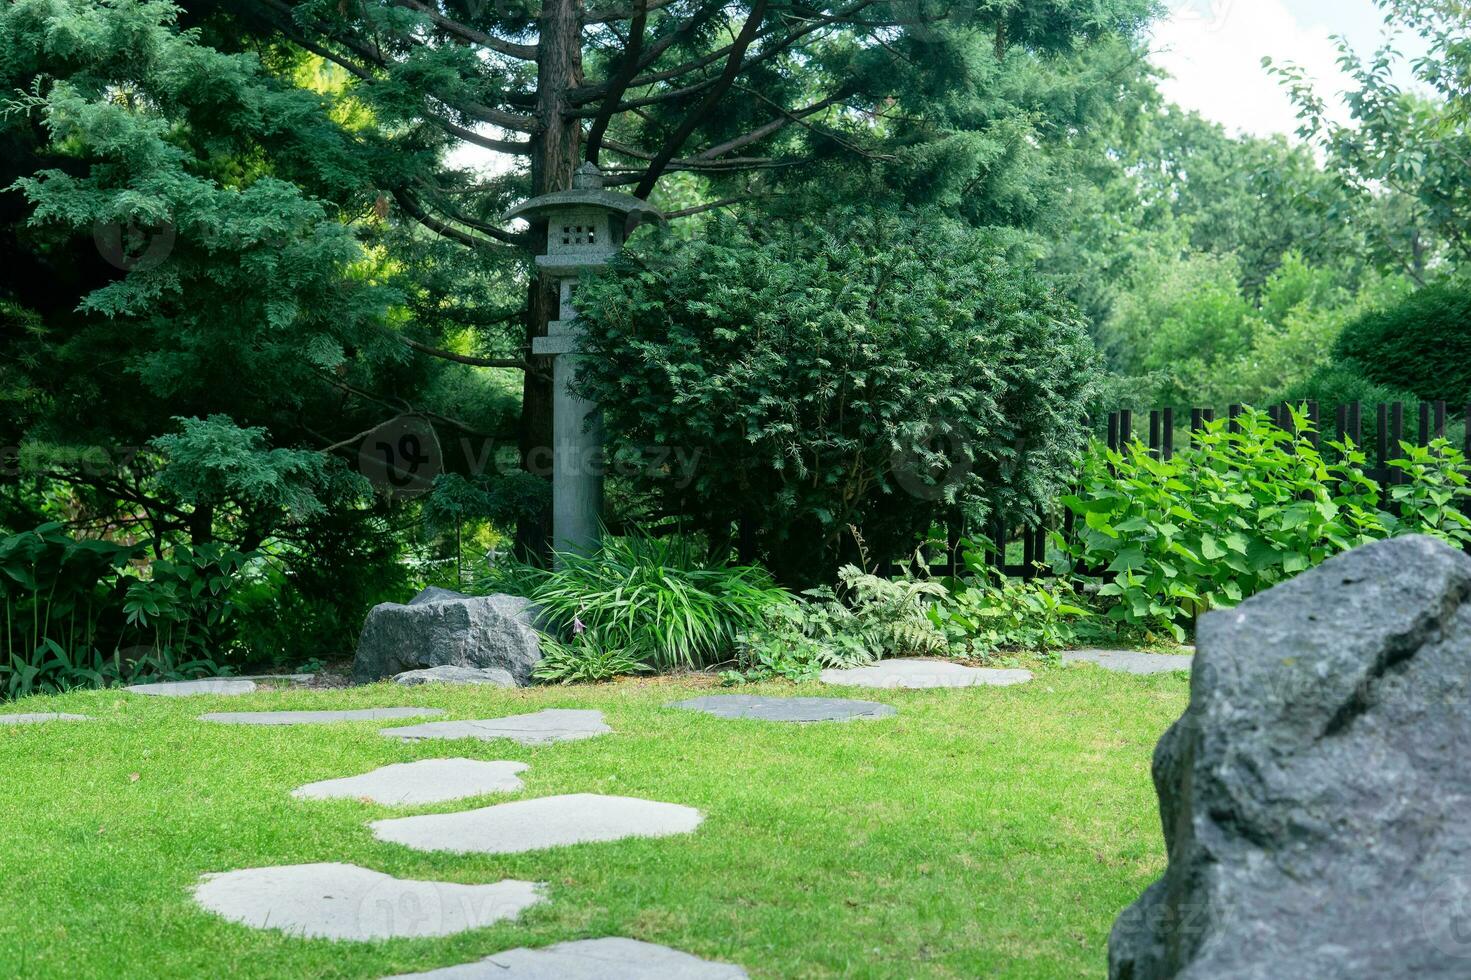 Japans tuin landschap met steen lantaarn onder pijnboom boom foto